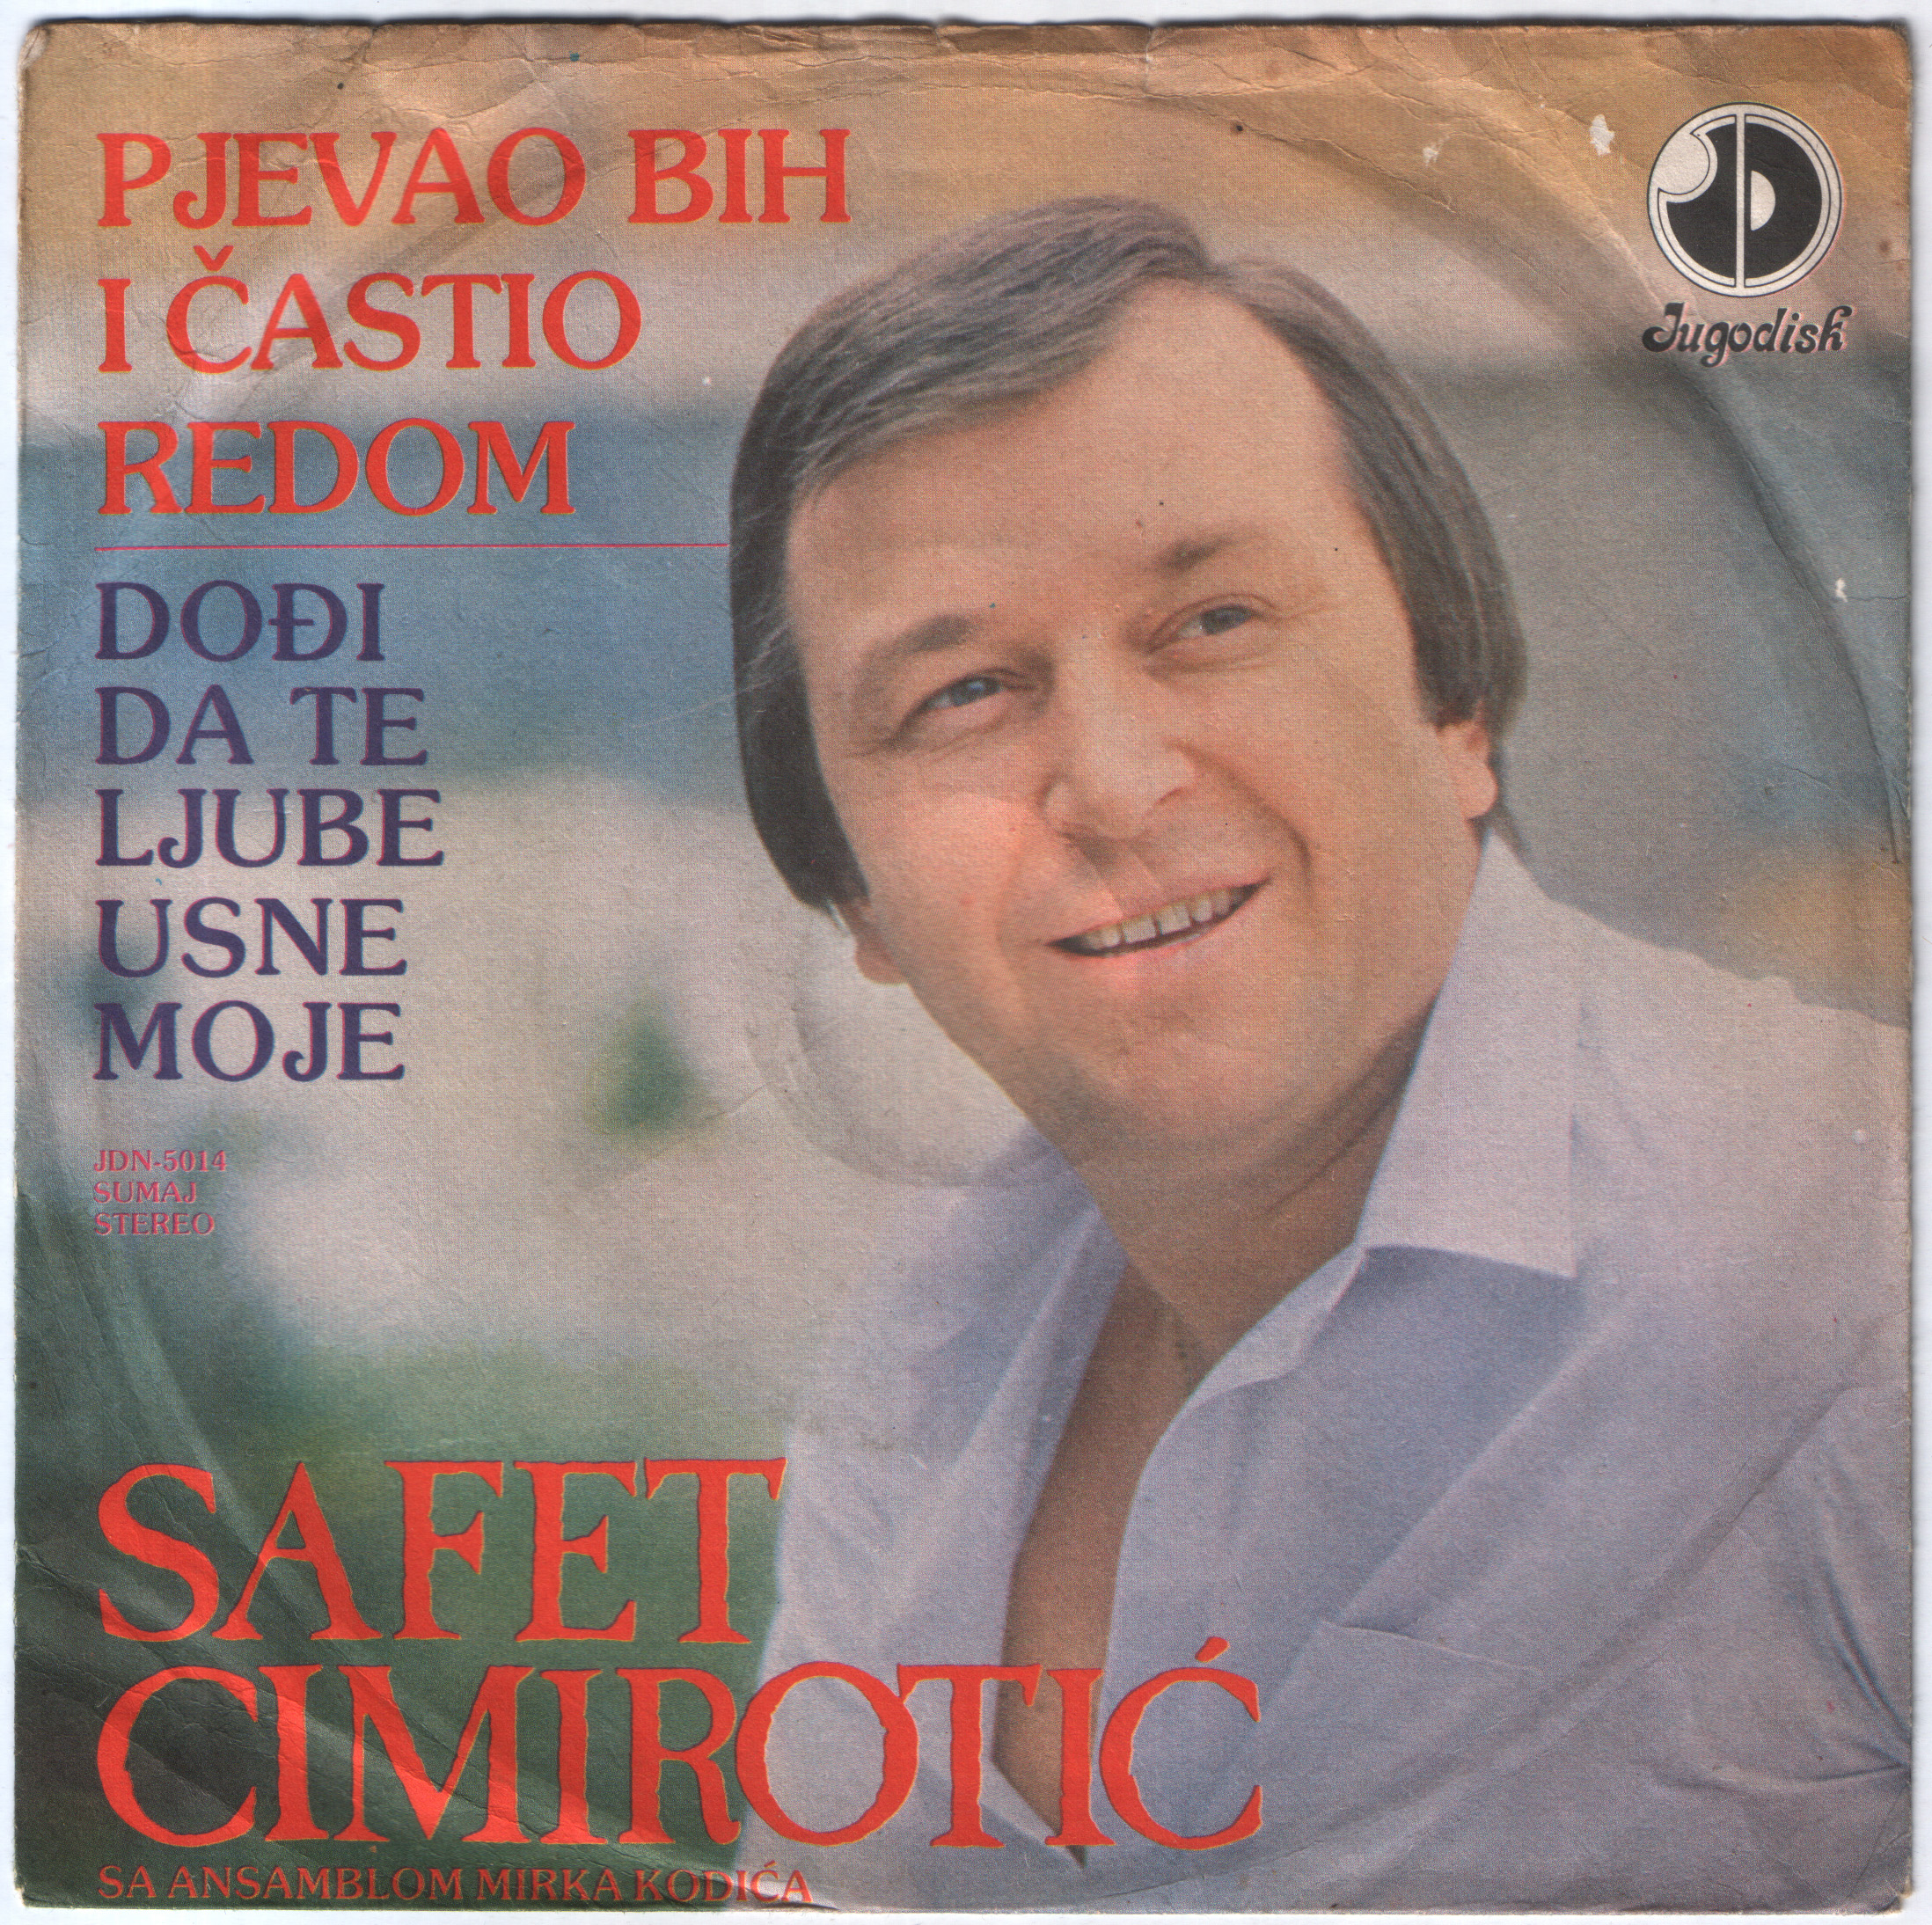 Safet Cimirotic 1981 P